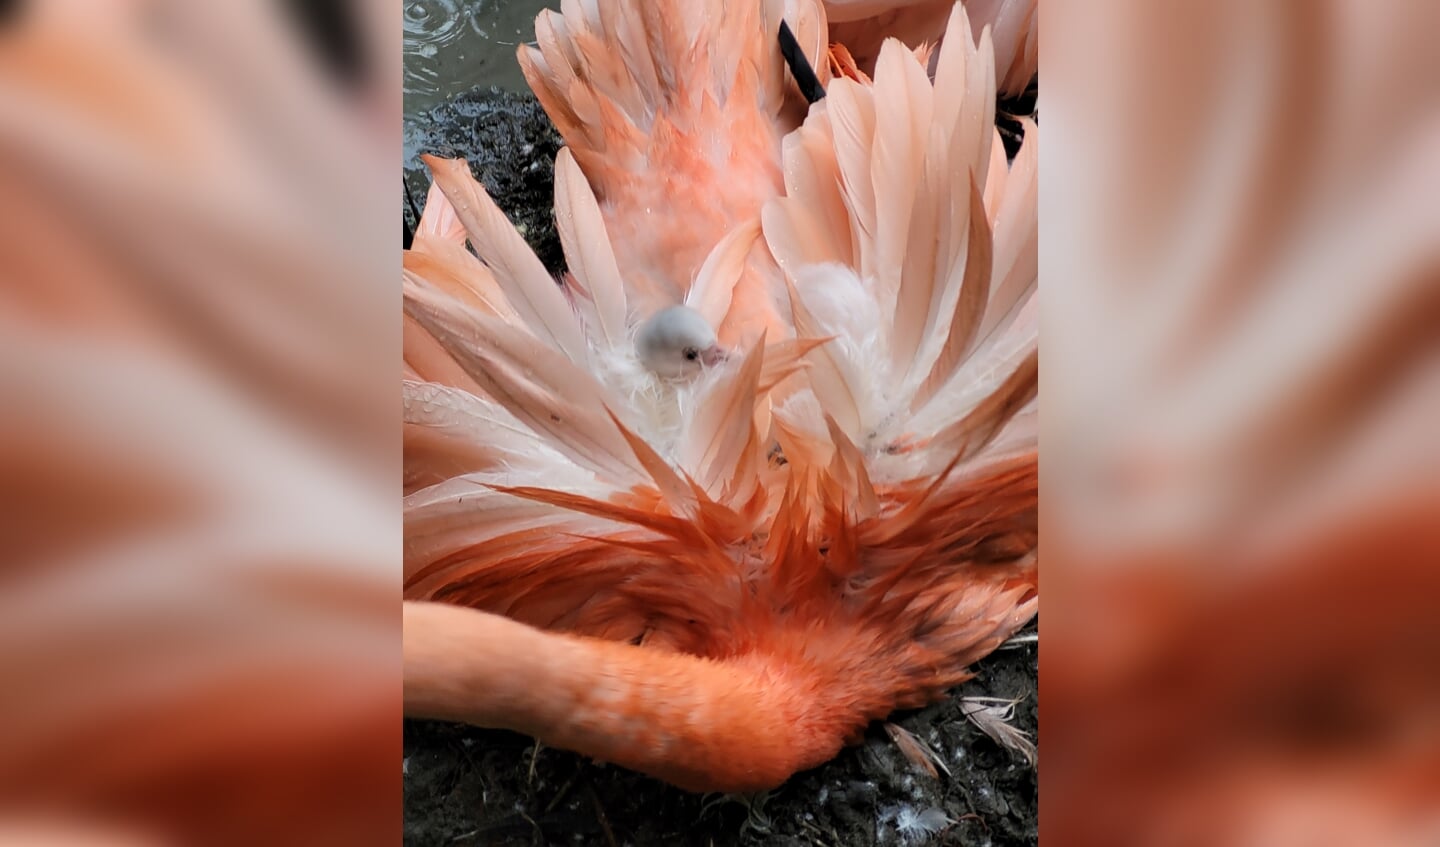 Flamingo kuikens zijn eerst grijs en later wit van kleur. Daarna worden ze geleidelijk aan roze